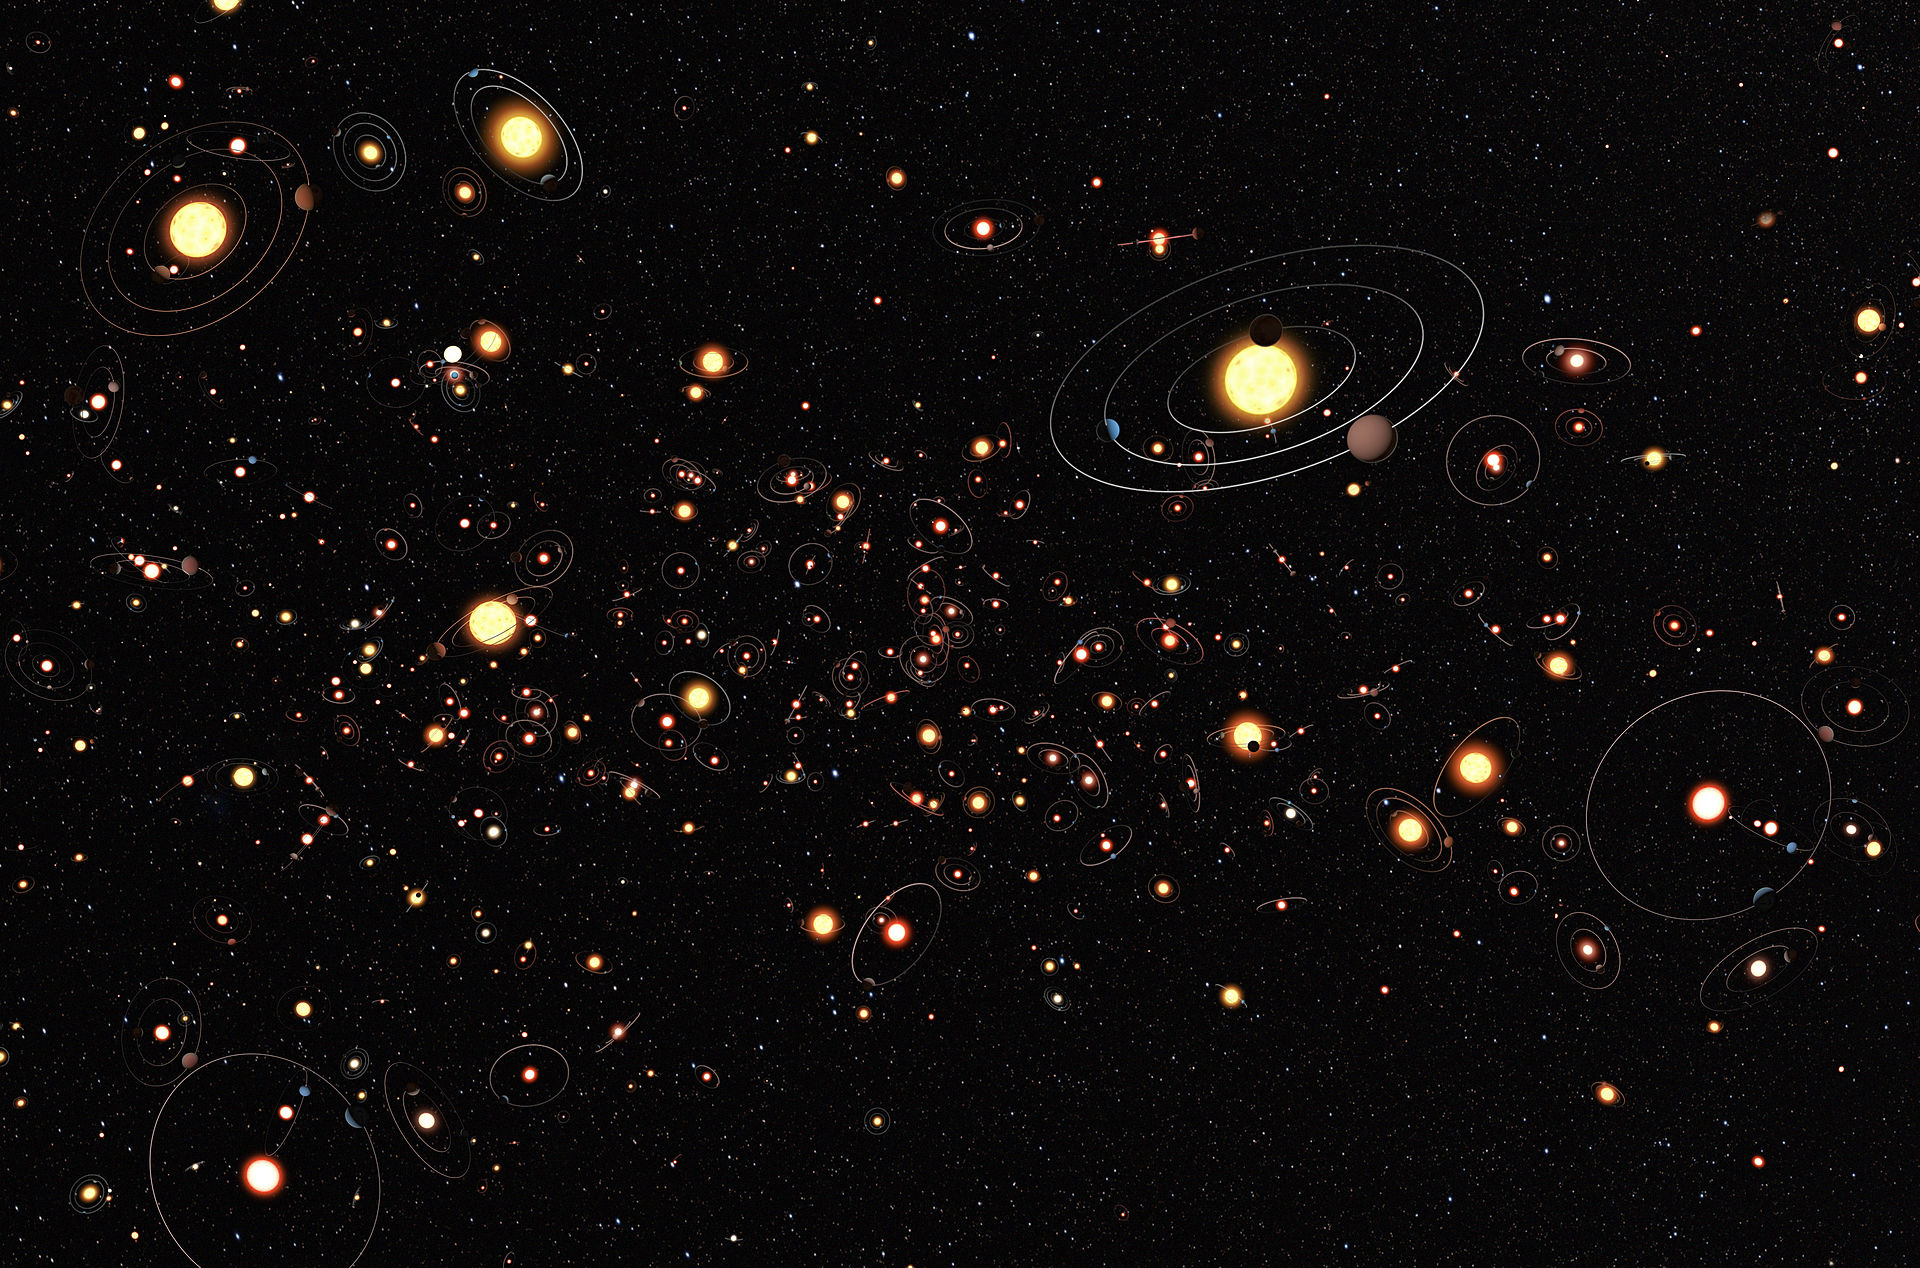 Conceito artístico de planetas ao redor de estrelas na Via Láctea. Crédito da imagem: ESO/M. Kornmesser